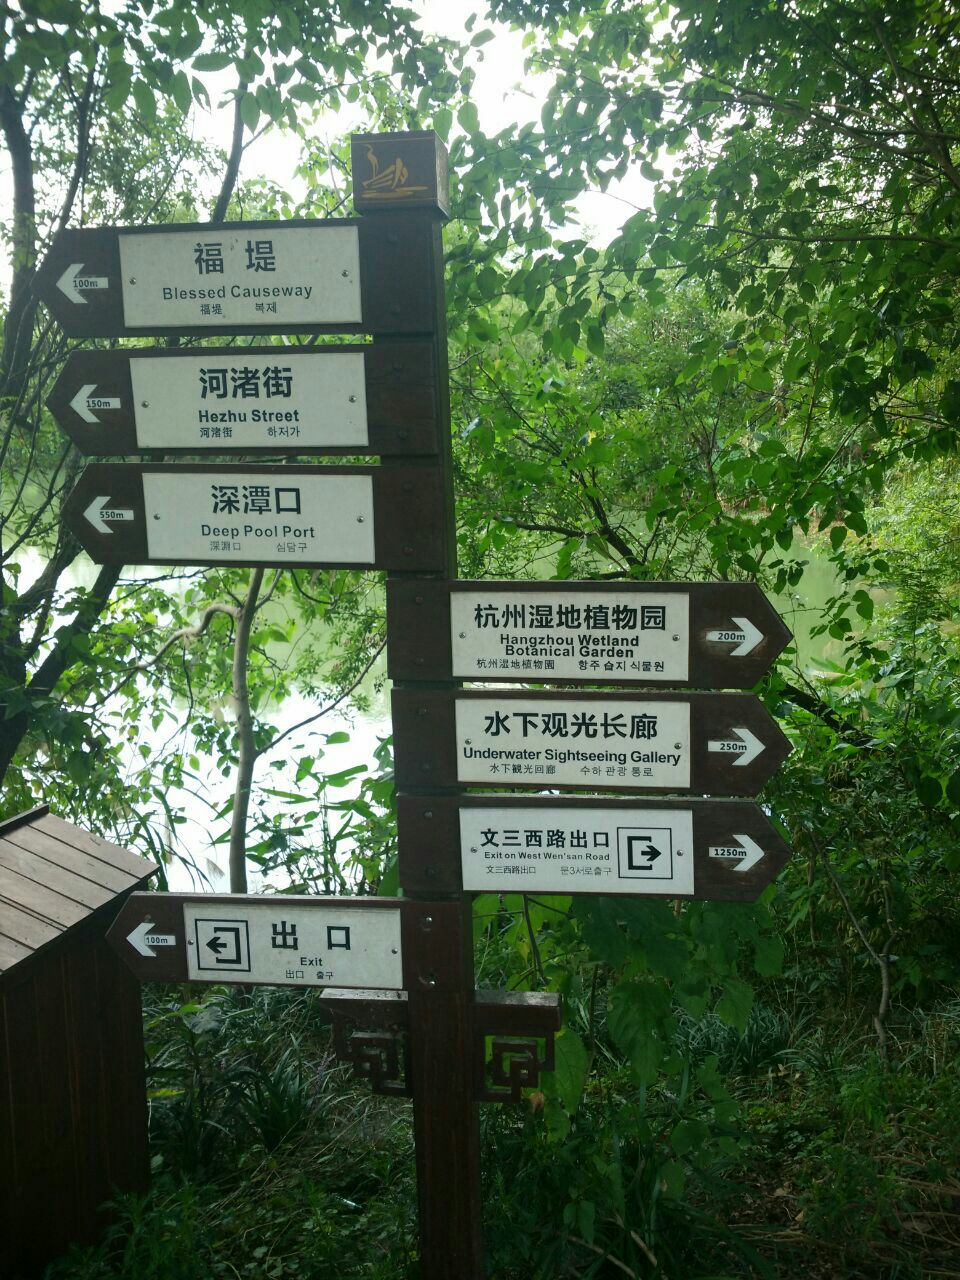 杭州湿地植物园在西溪湿地公园的绿堤内,门票已包含在西溪湿地的门票